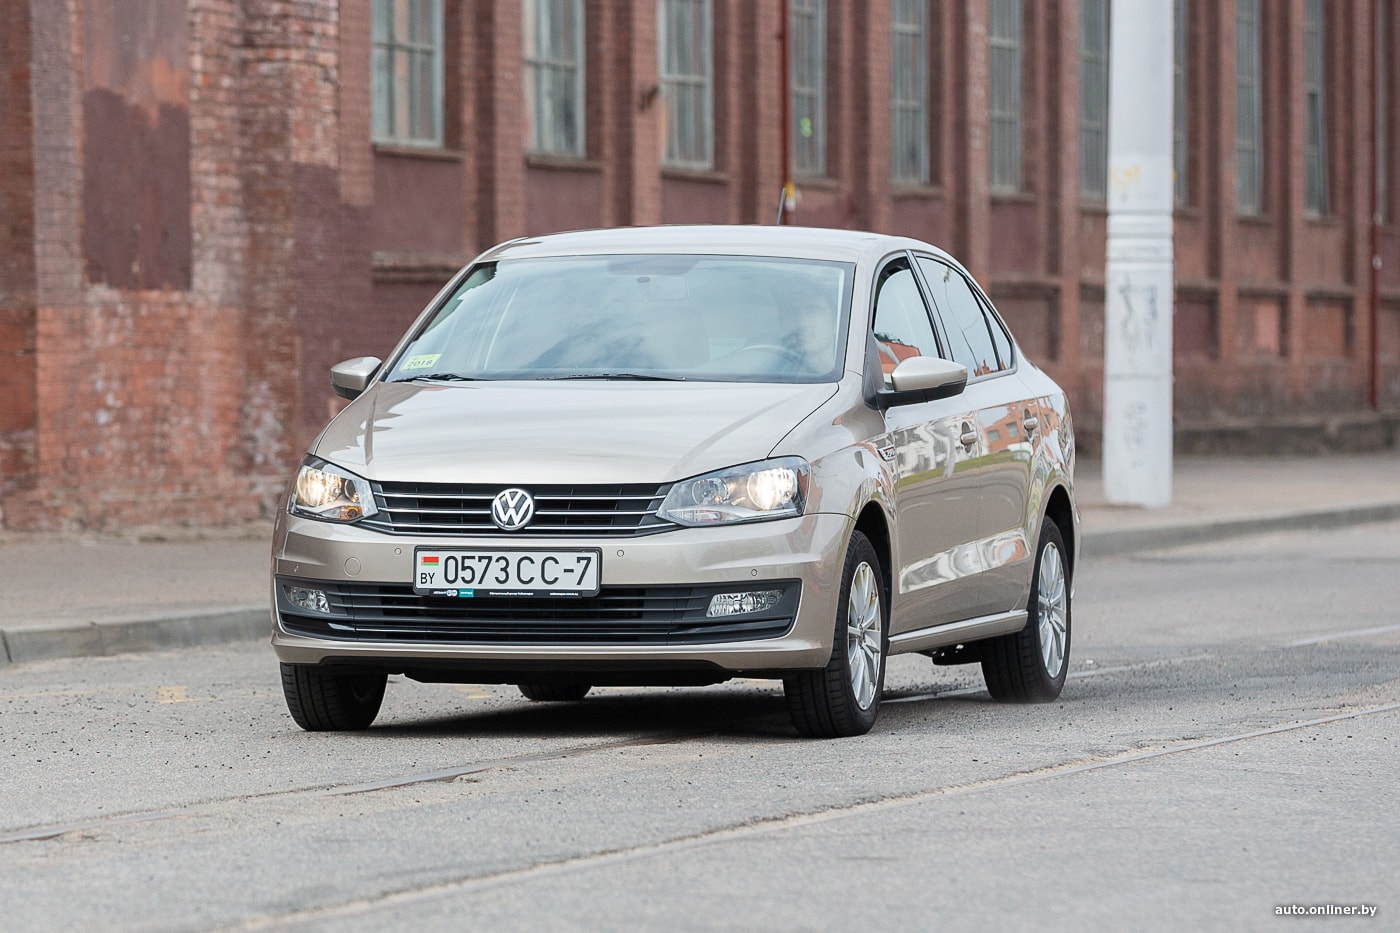 Купить Volkswagen Golf в Владимире - новый Новый Фольксваген Гольф от автосалона МАС Моторс